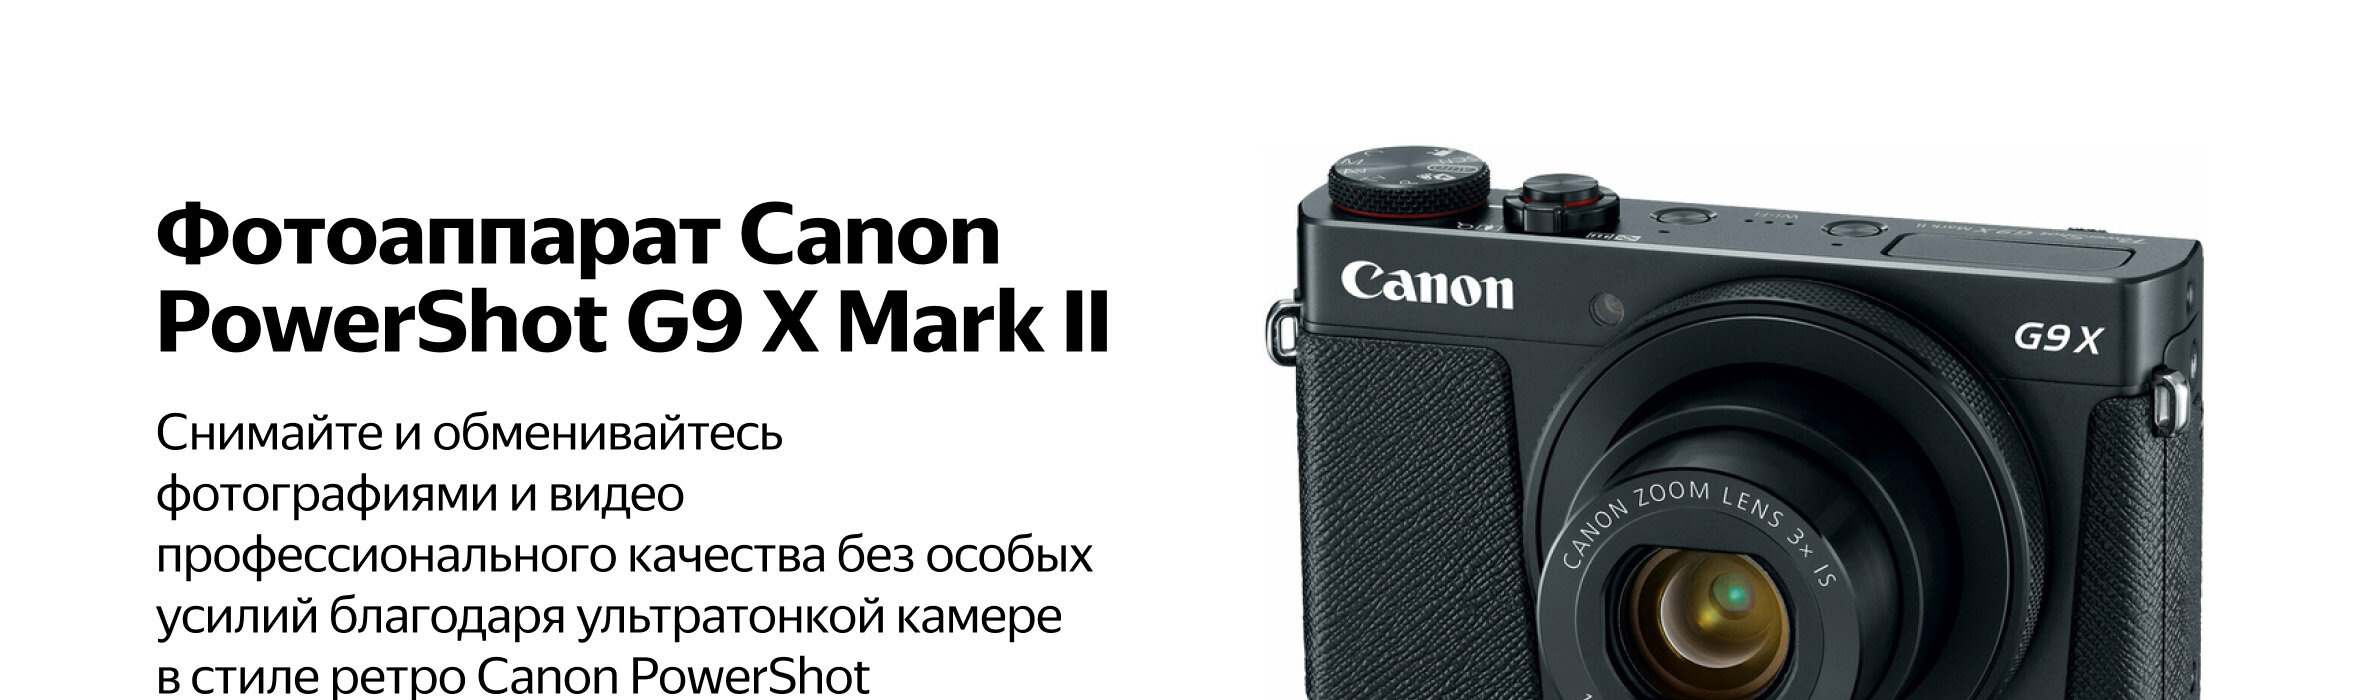 Фотоаппарат Canon PowerShot G9 X Mark II — купить по выгодной цене 